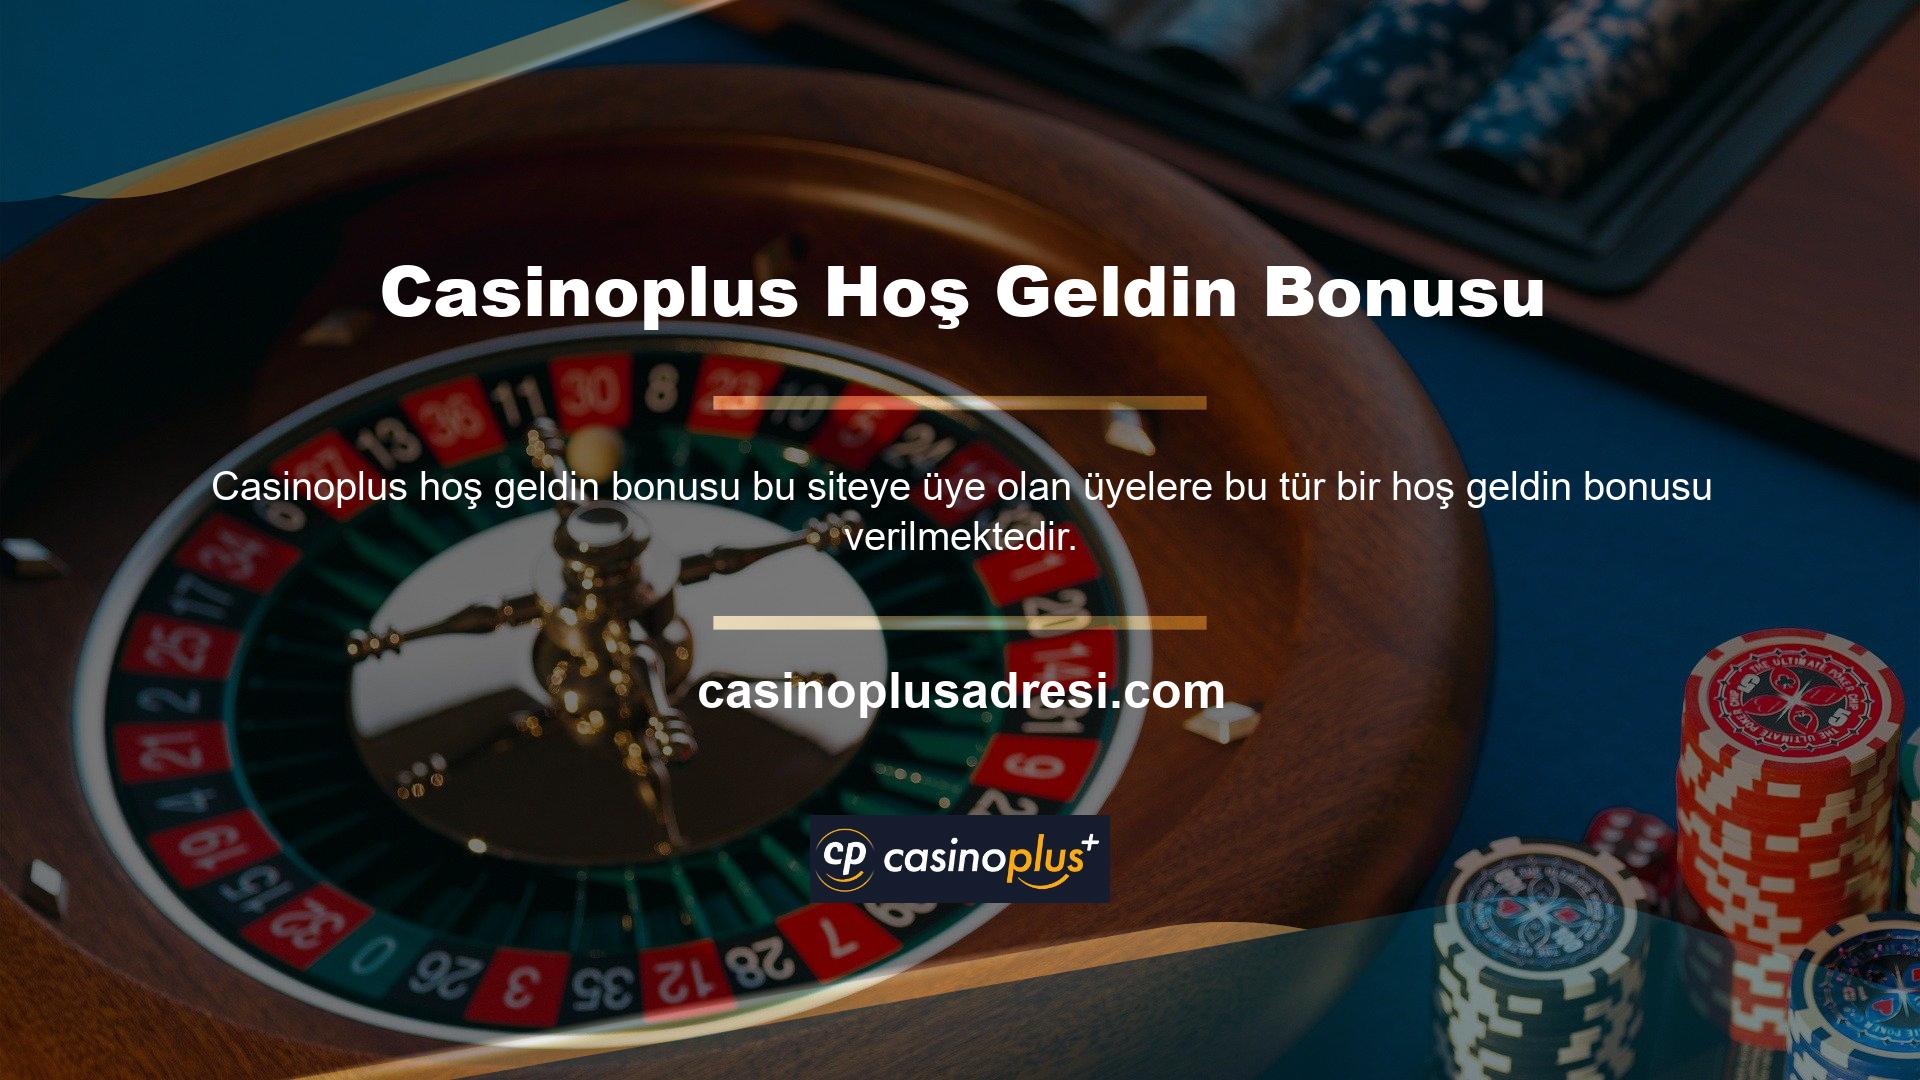 Başka bir deyişle Casinoplus katılmak, ücretsiz bonusu almanın ön şartıdır